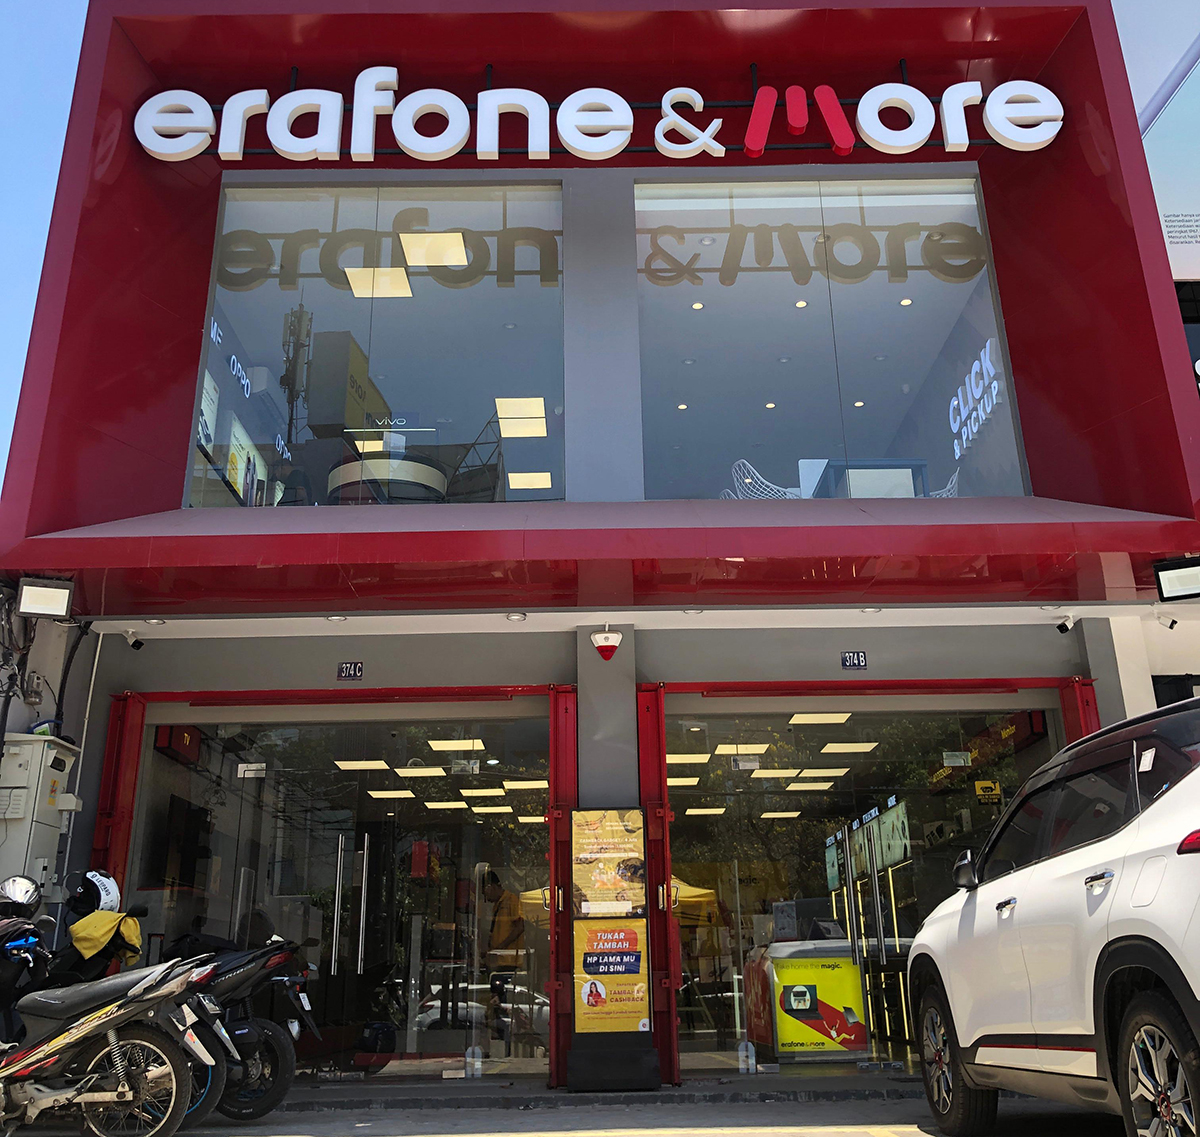 Erafone & More